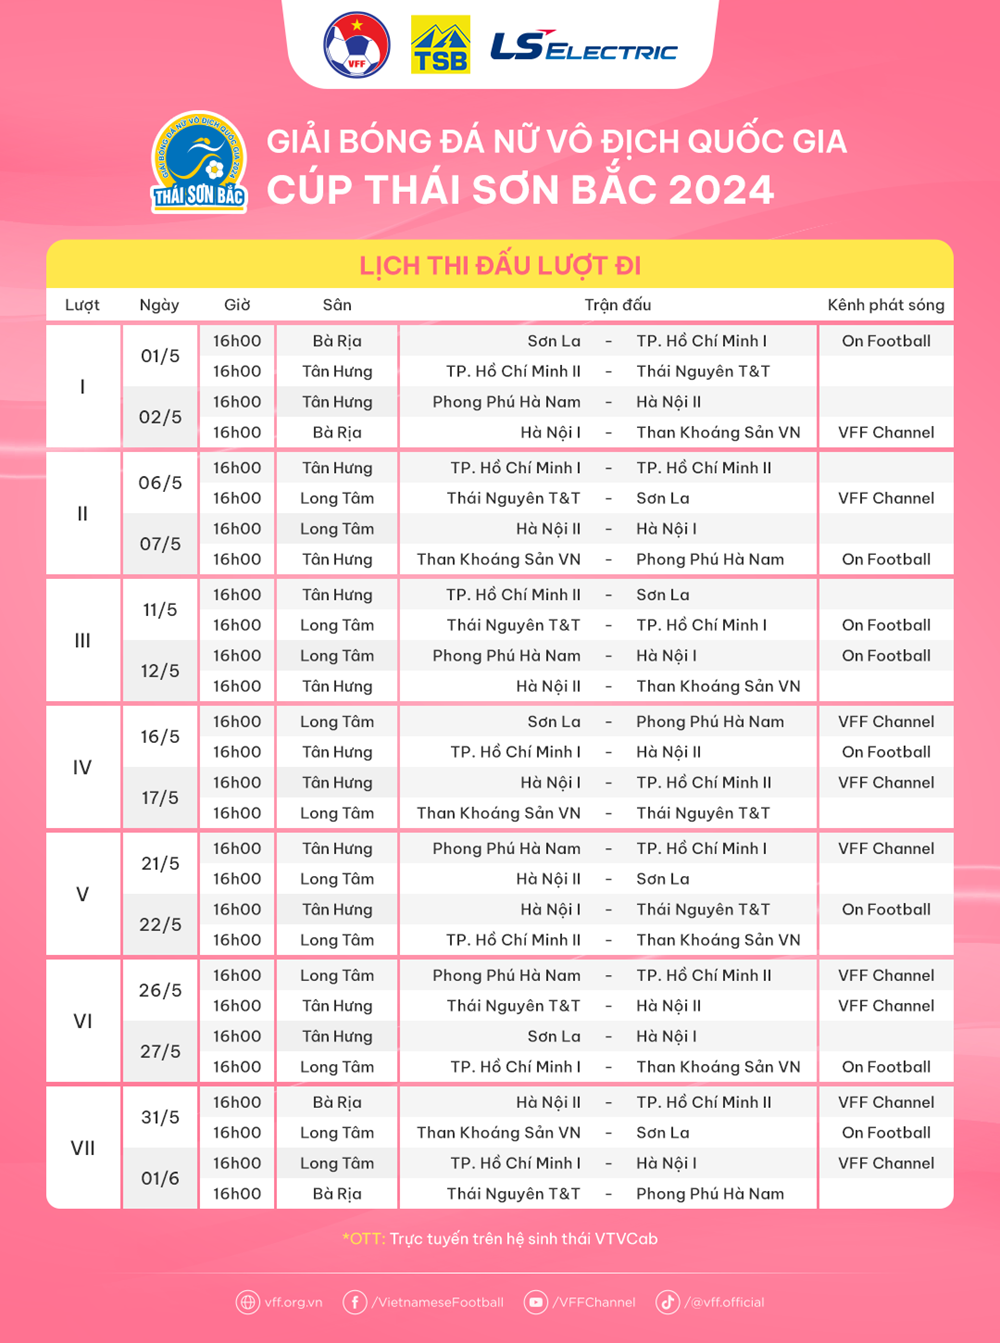 Lượt đi Giải bóng đá nữ VĐQG 2024 diễn ra tại Bà Rịa - Vũng Tàu - ảnh 2